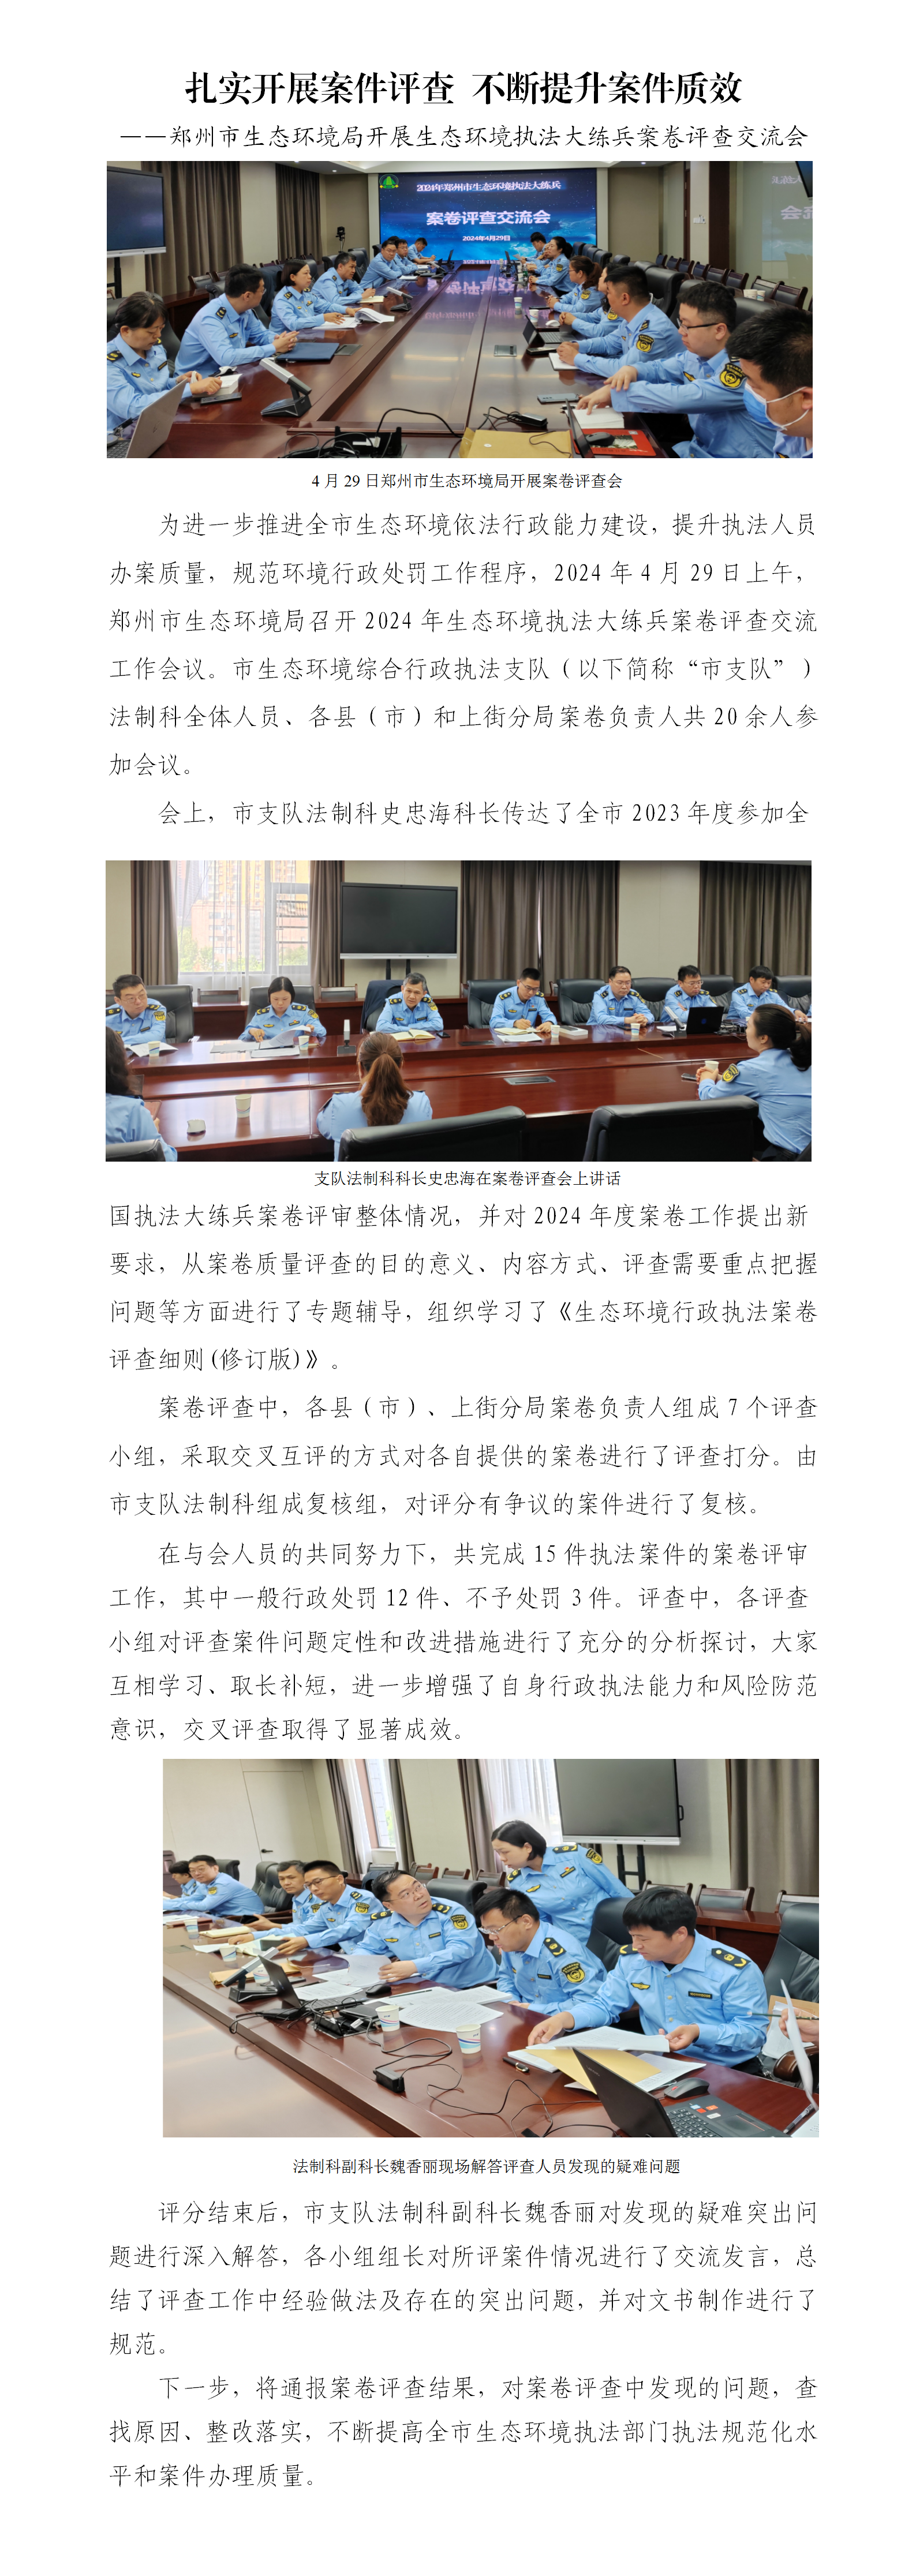 第10期 郑州市召开2024年生态环境执法大练兵案卷评查会_01.png